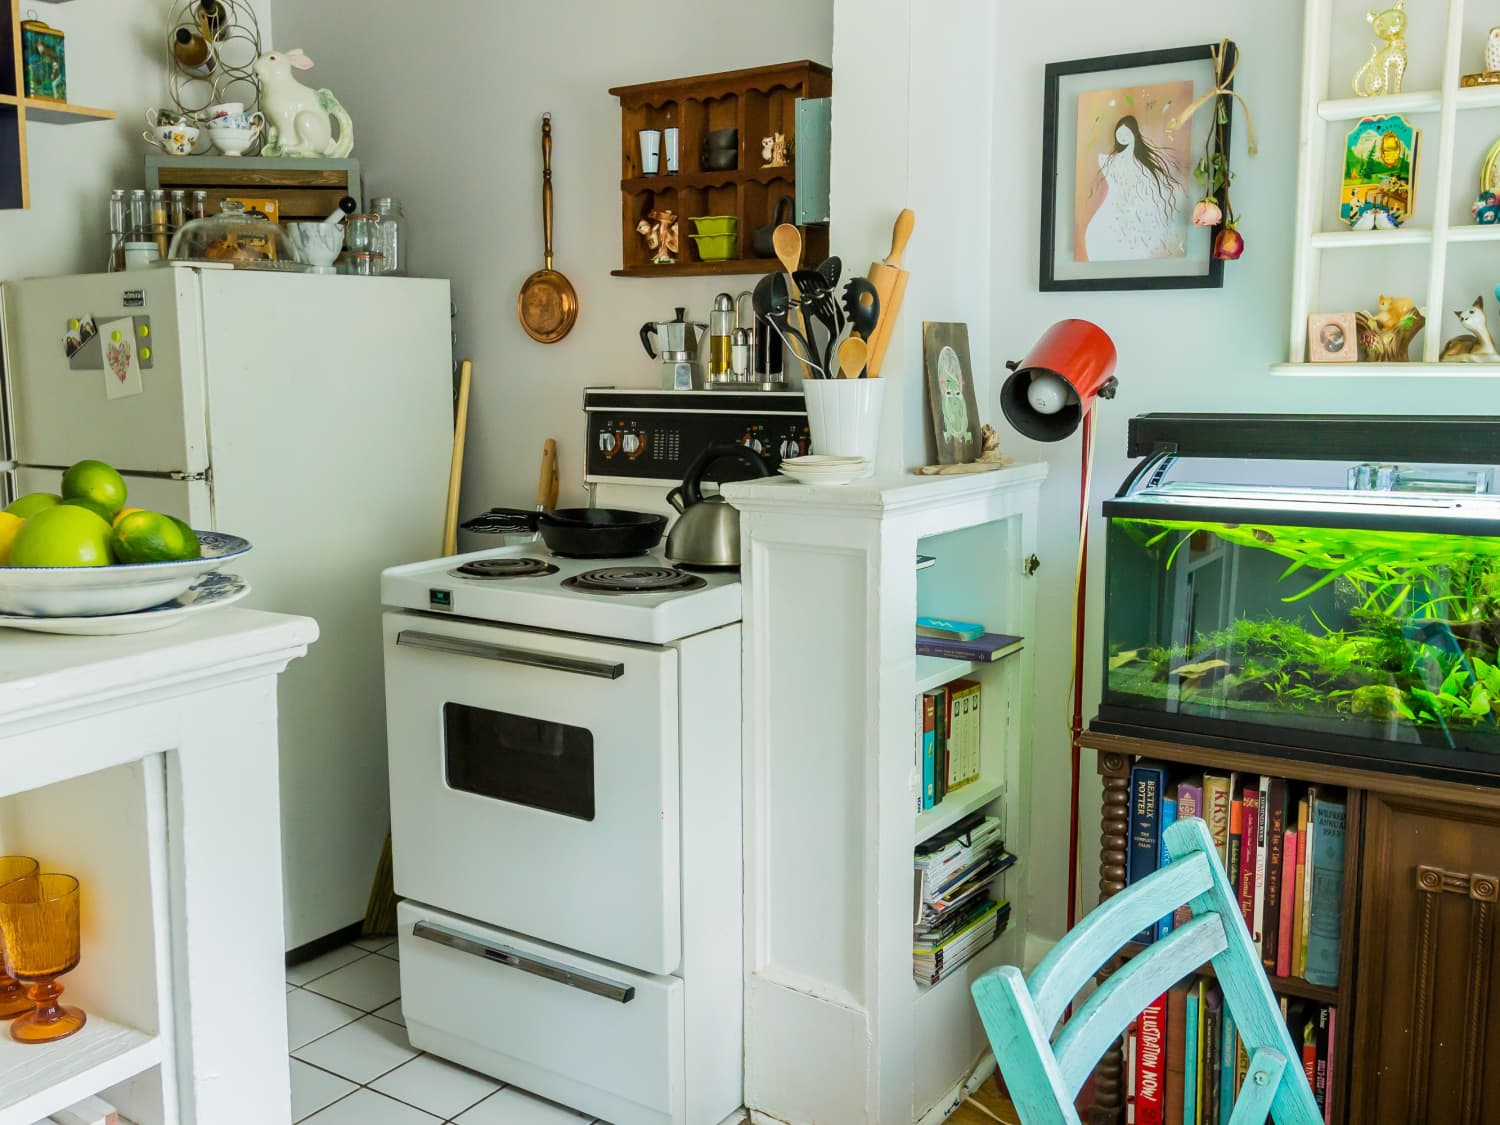 Green Kitchen Decorating Ideas - Green Kitchen Decor